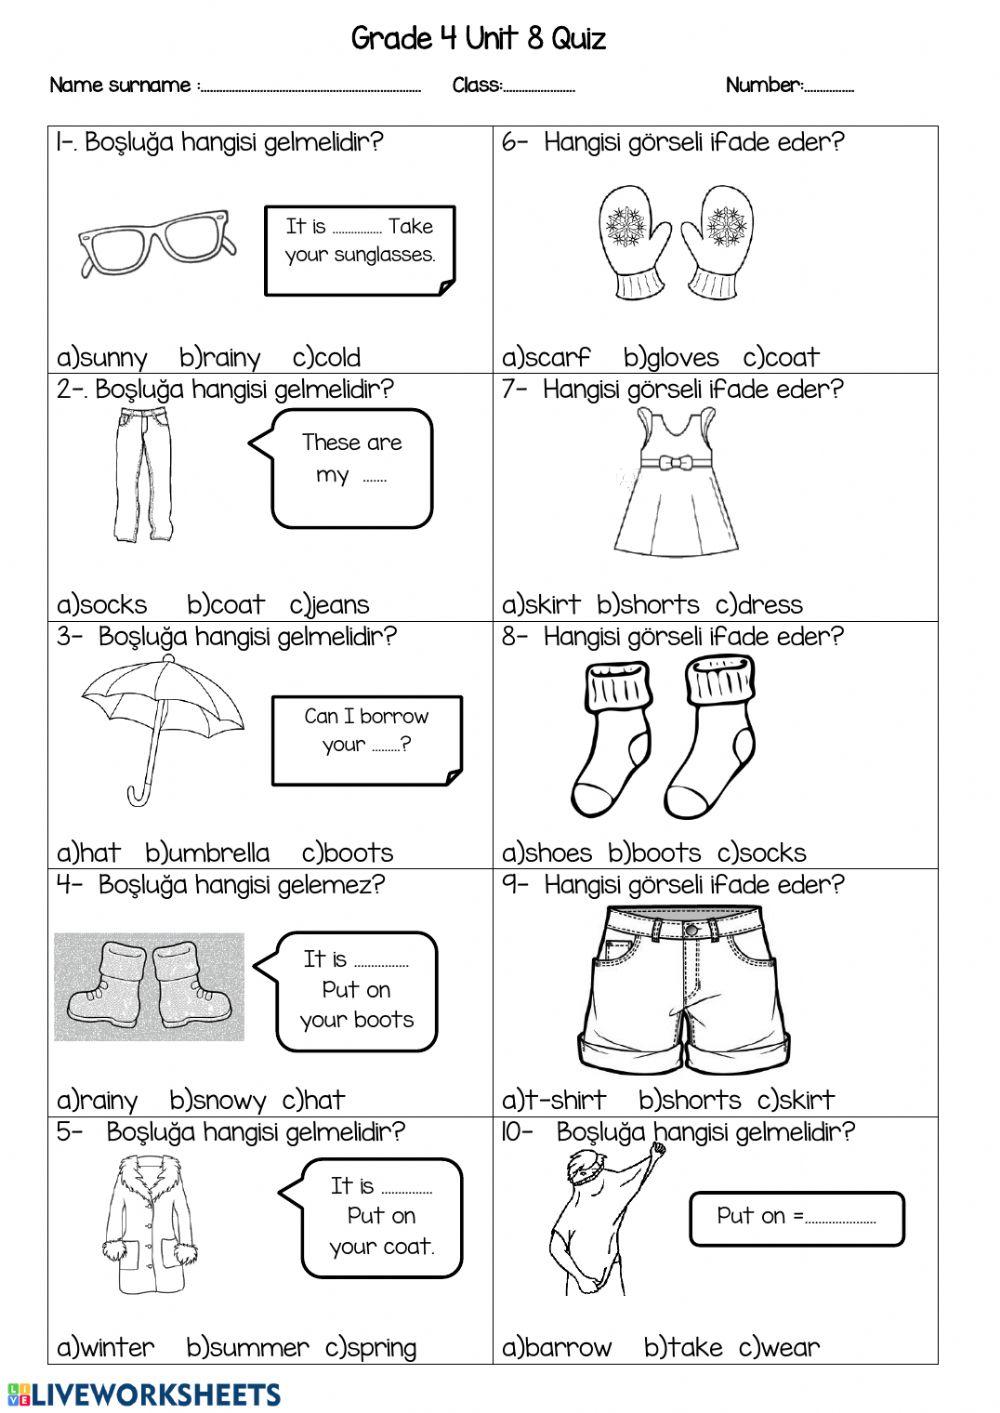 Clothes quiz worksheet | Live Worksheets